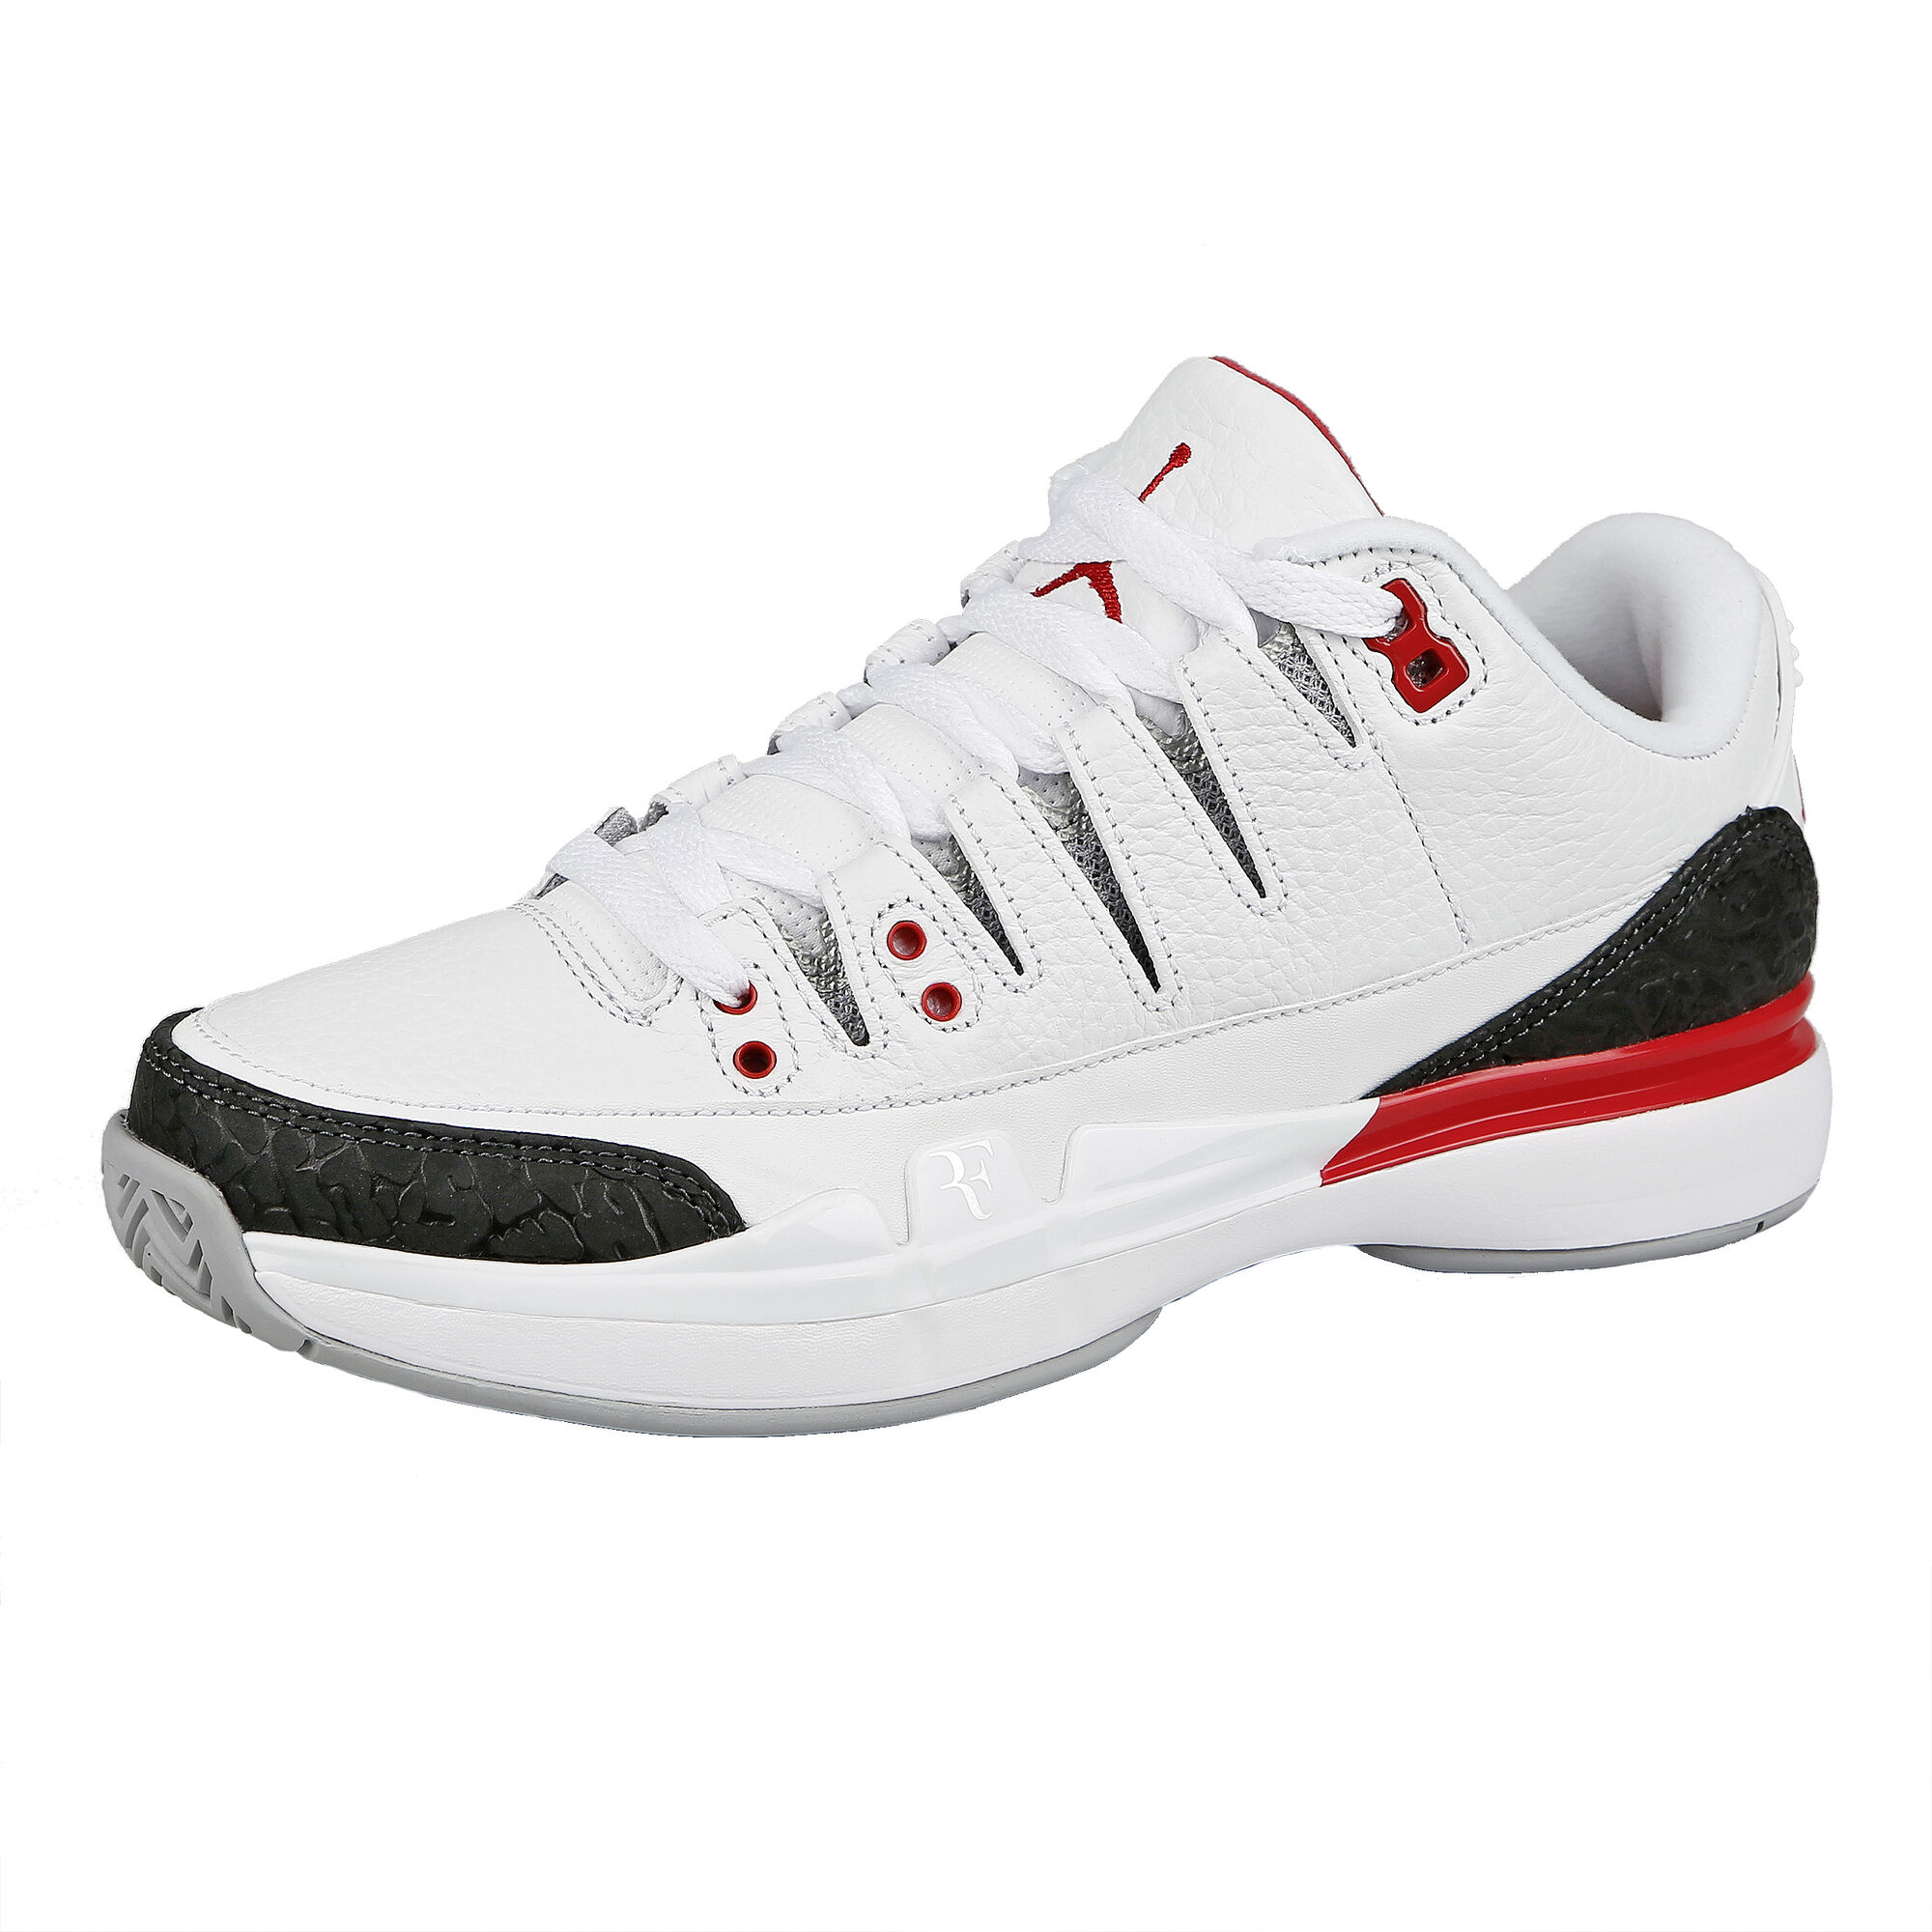 buy Roger Federer Zoom Vapor Air Jordan 3 All Court Shoe Men - White, Black online Tennis-Point